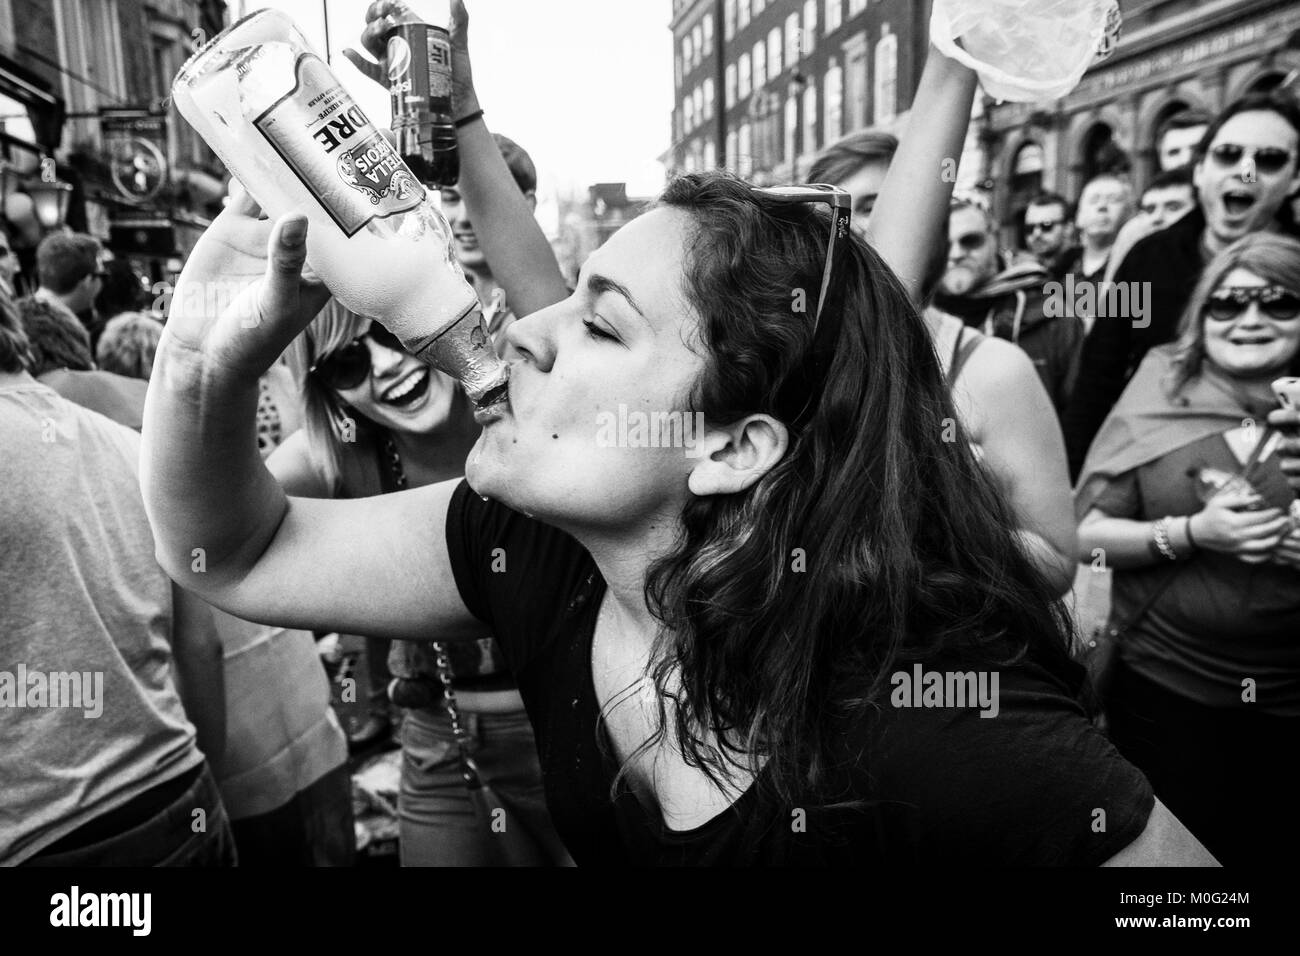 Photographie de rue en noir et blanc à Londres : la jeune femme a applaudi par la foule alors qu'elle boit une bouteille à la fête de rue. Banque D'Images